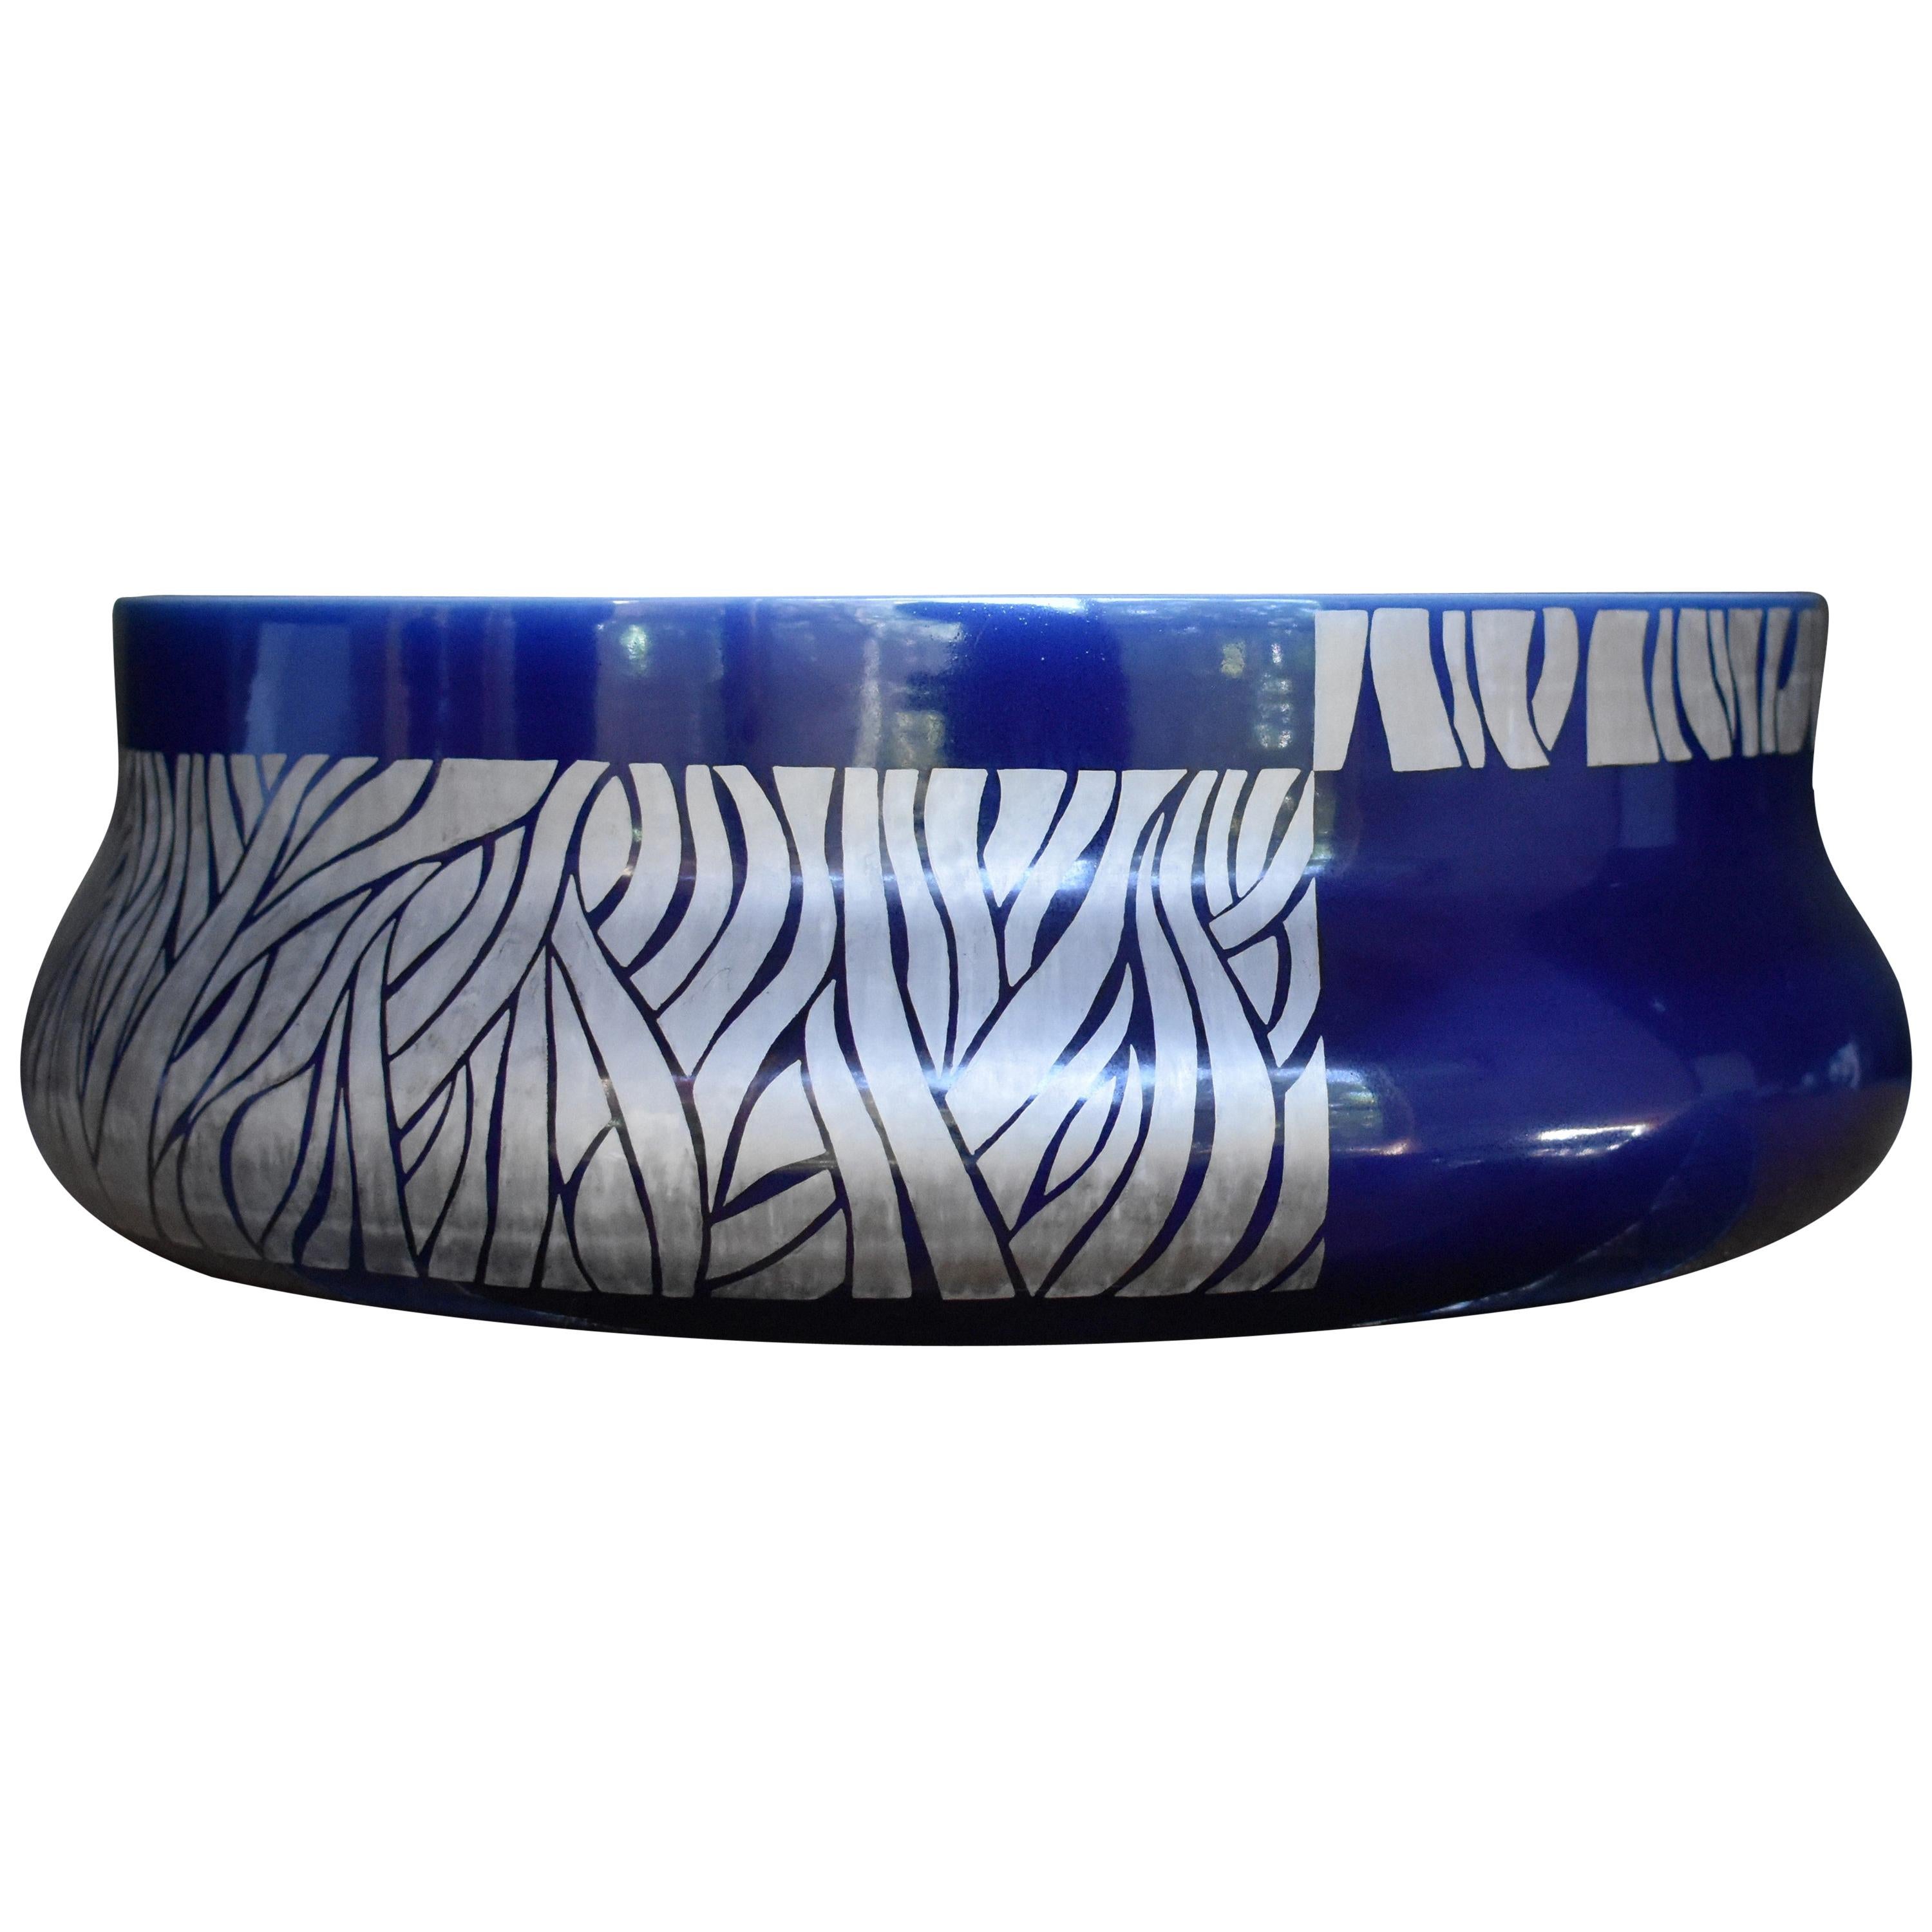 Grand bol en porcelaine bleue japonaise en platine par un maître artiste